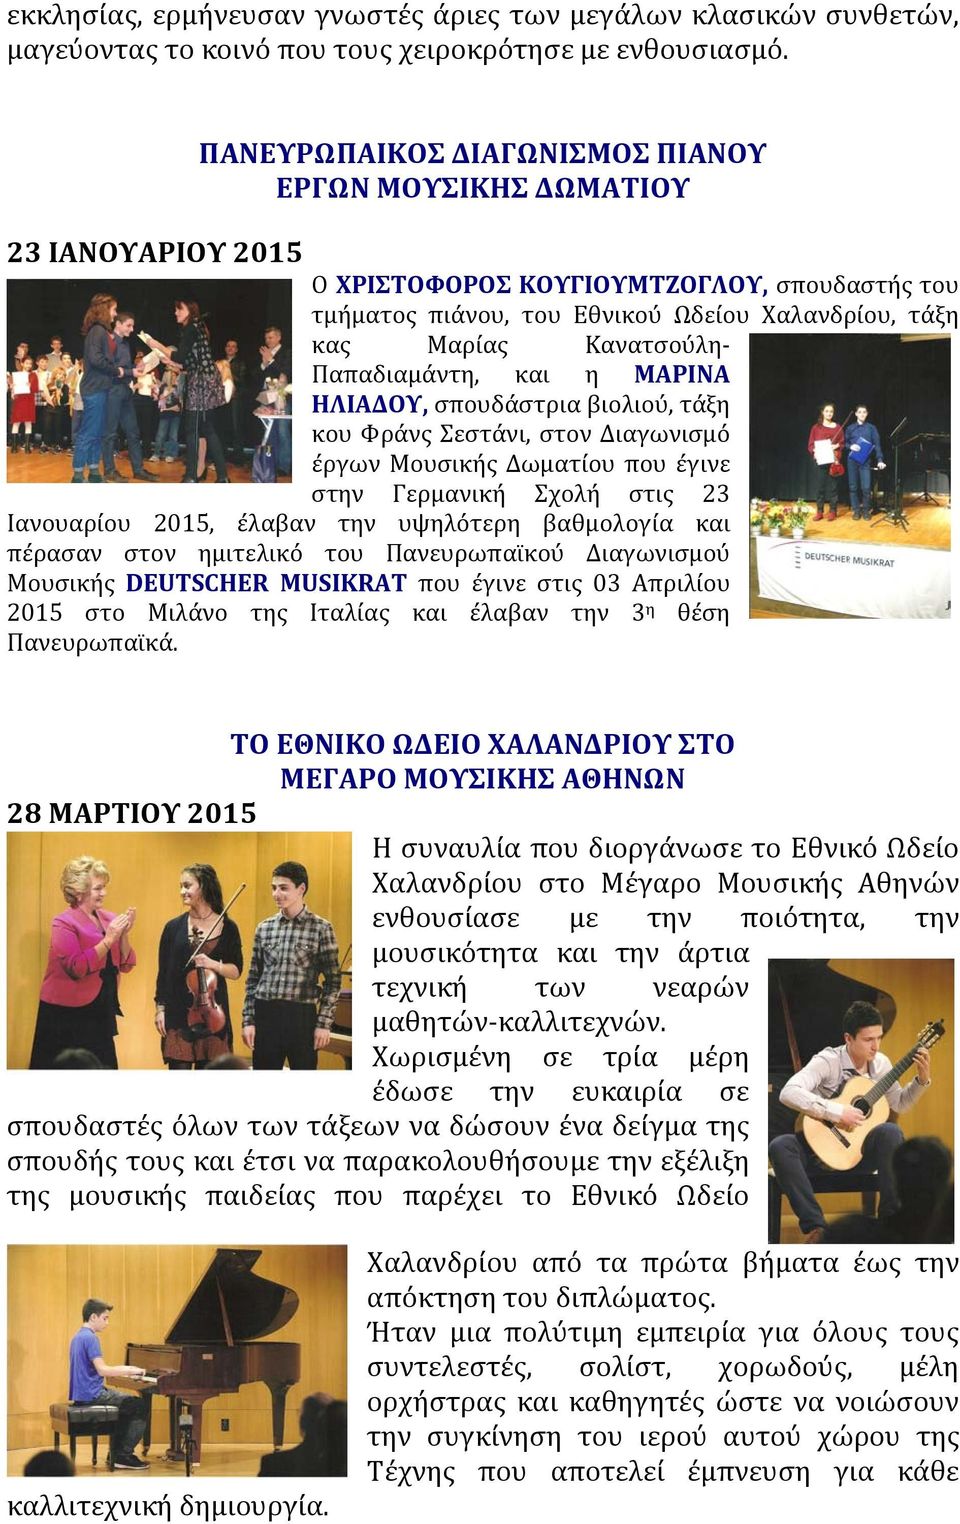 Παπαδιαμάντη, και η ΜΑΡΙΝΑ ΗΛΙΑΔΟΥ, σπουδάστρια βιολιού, τάξη κου Φράνς Σεστάνι, στον Διαγωνισμό έργων Μουσικής Δωματίου που έγινε στην Γερμανική Σχολή στις 23 Ιανουαρίου 2015, έλαβαν την υψηλότερη